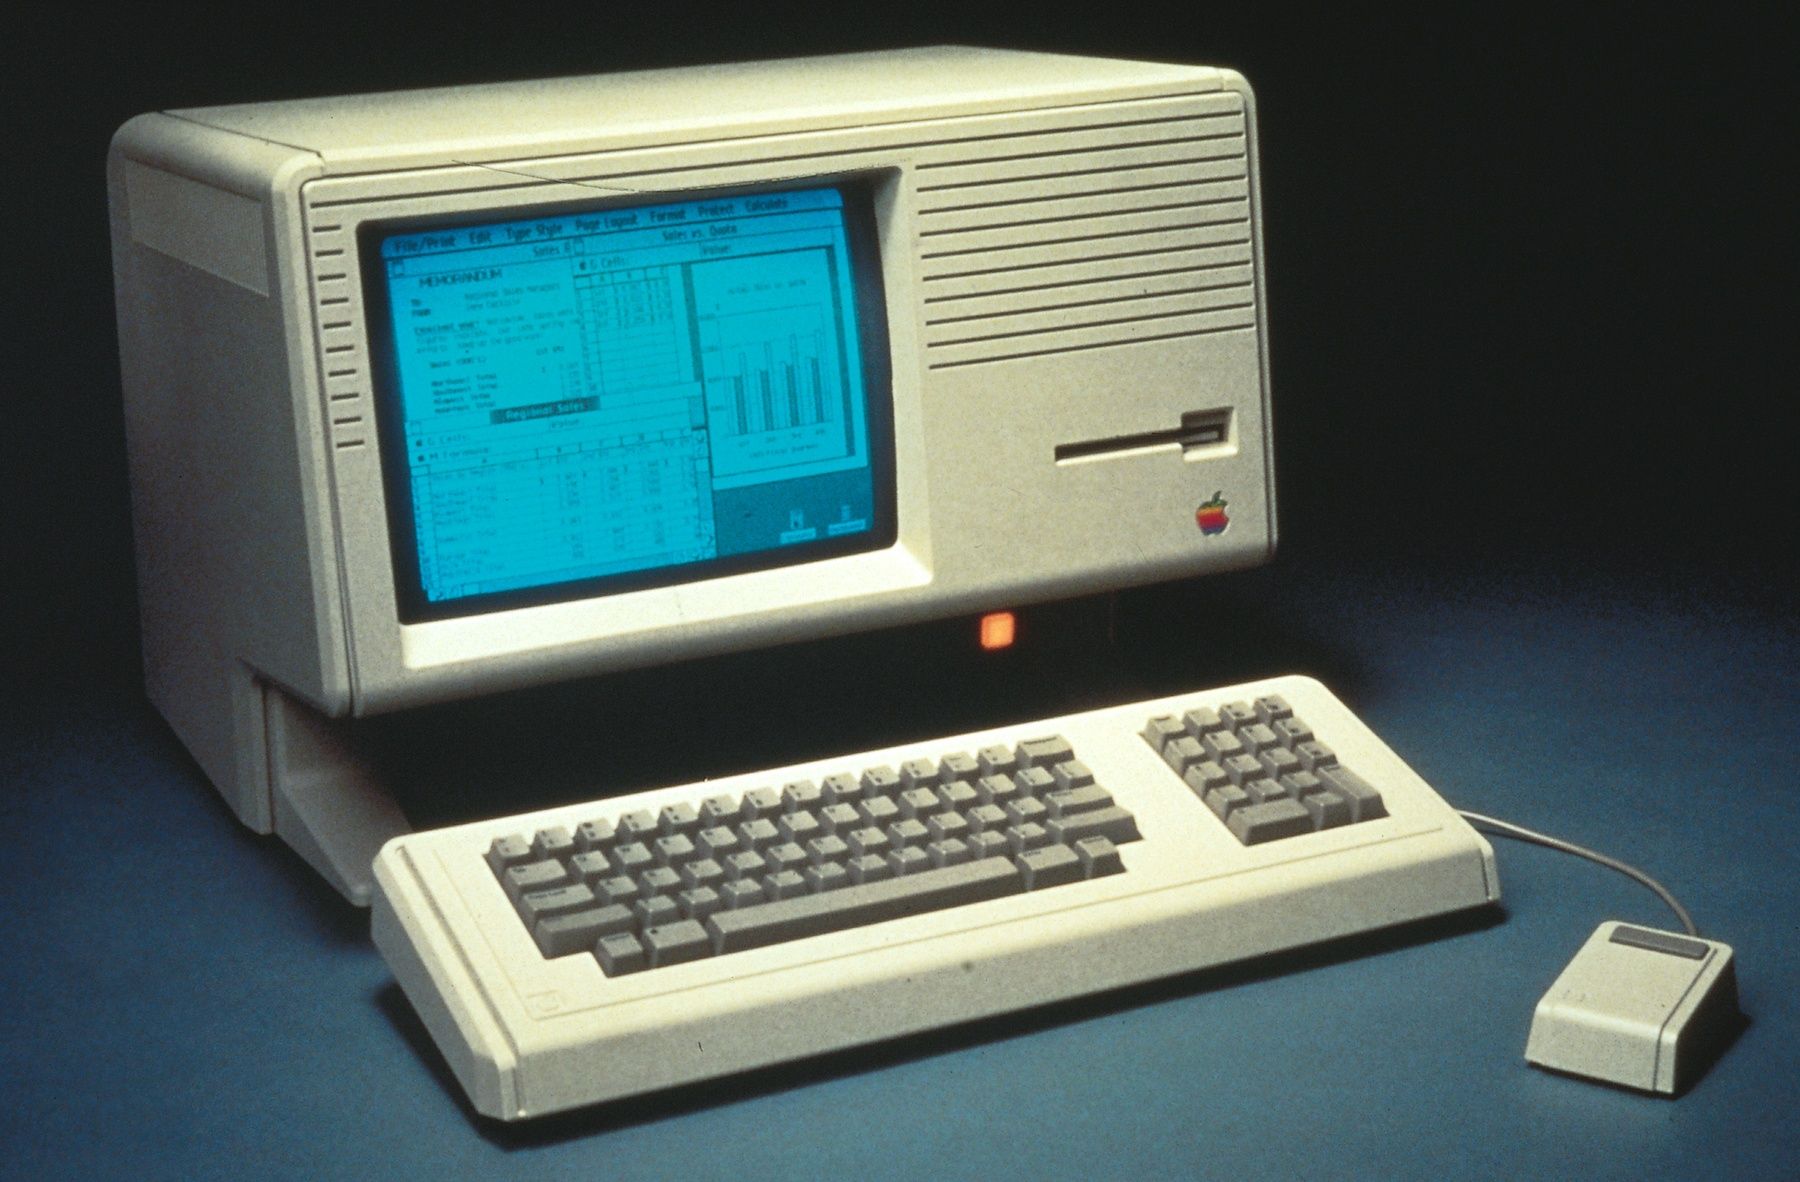 Этот день в истории Apple: состоялся запуск проект Lisa, ставшего крупнейшим провалом компании